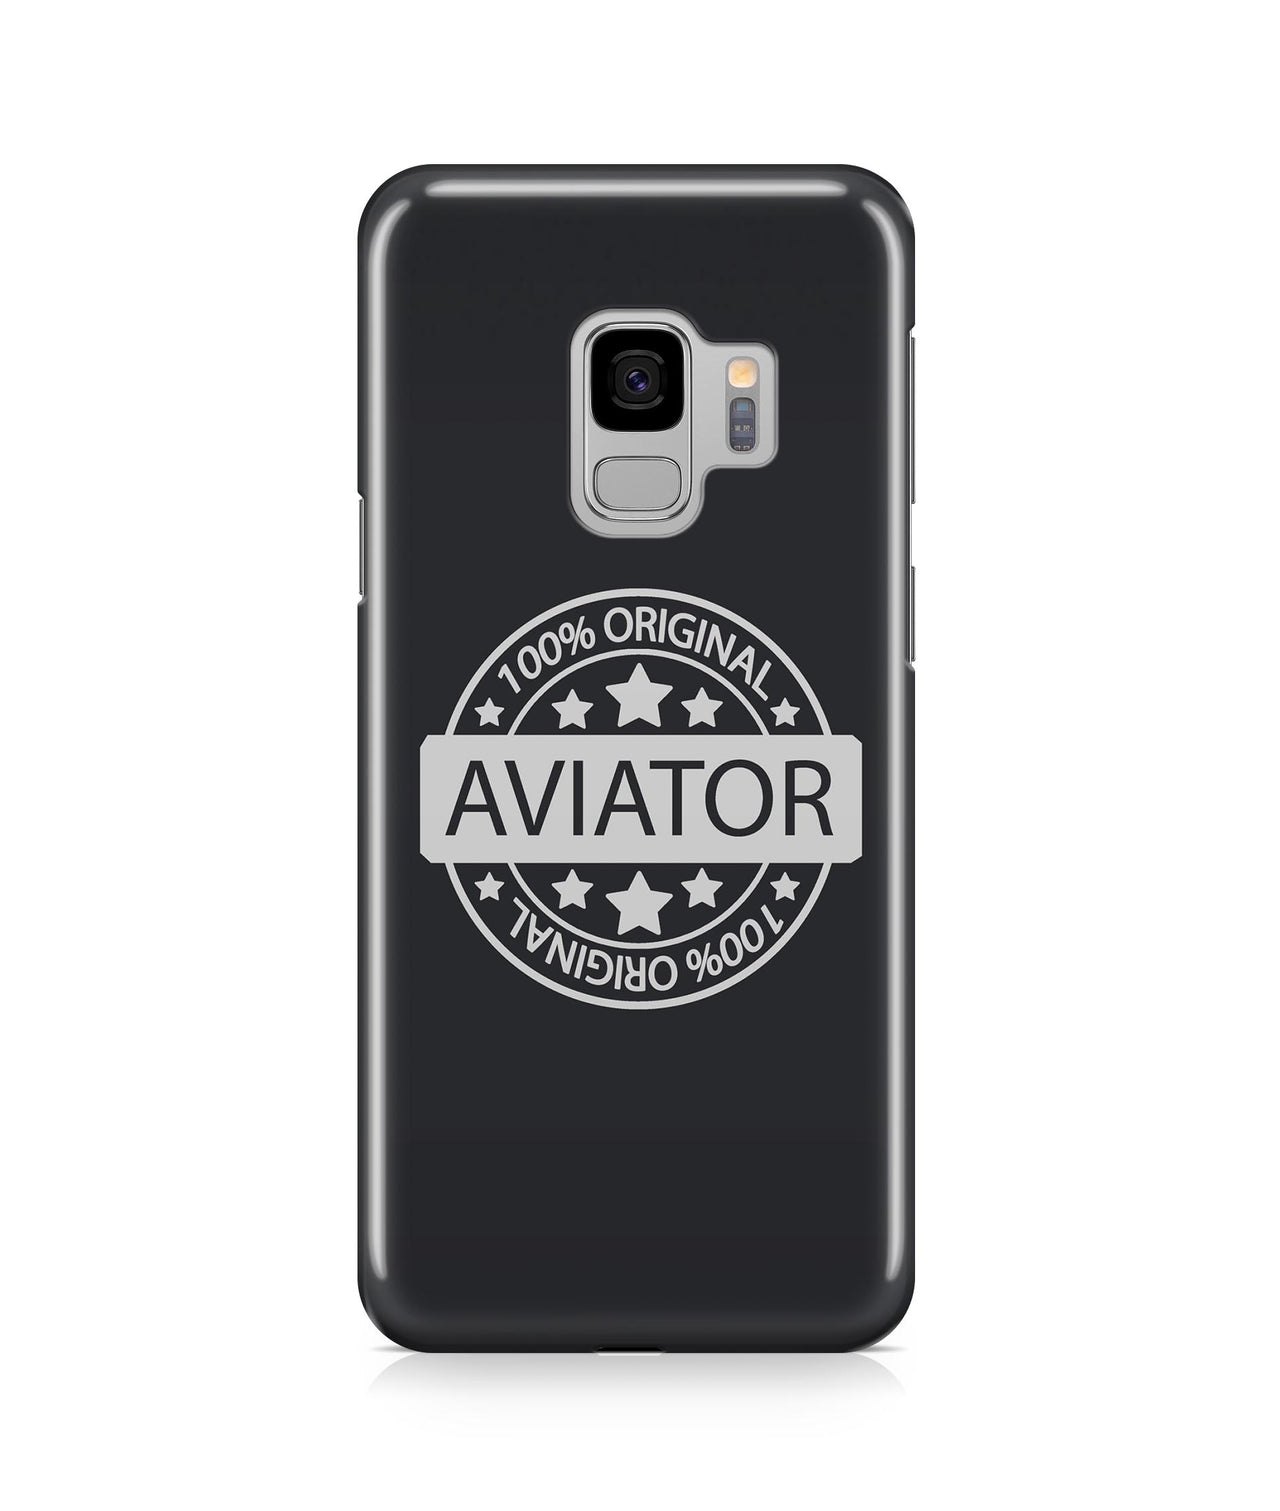 %100 Original Aviator Designed Samsung J Cases